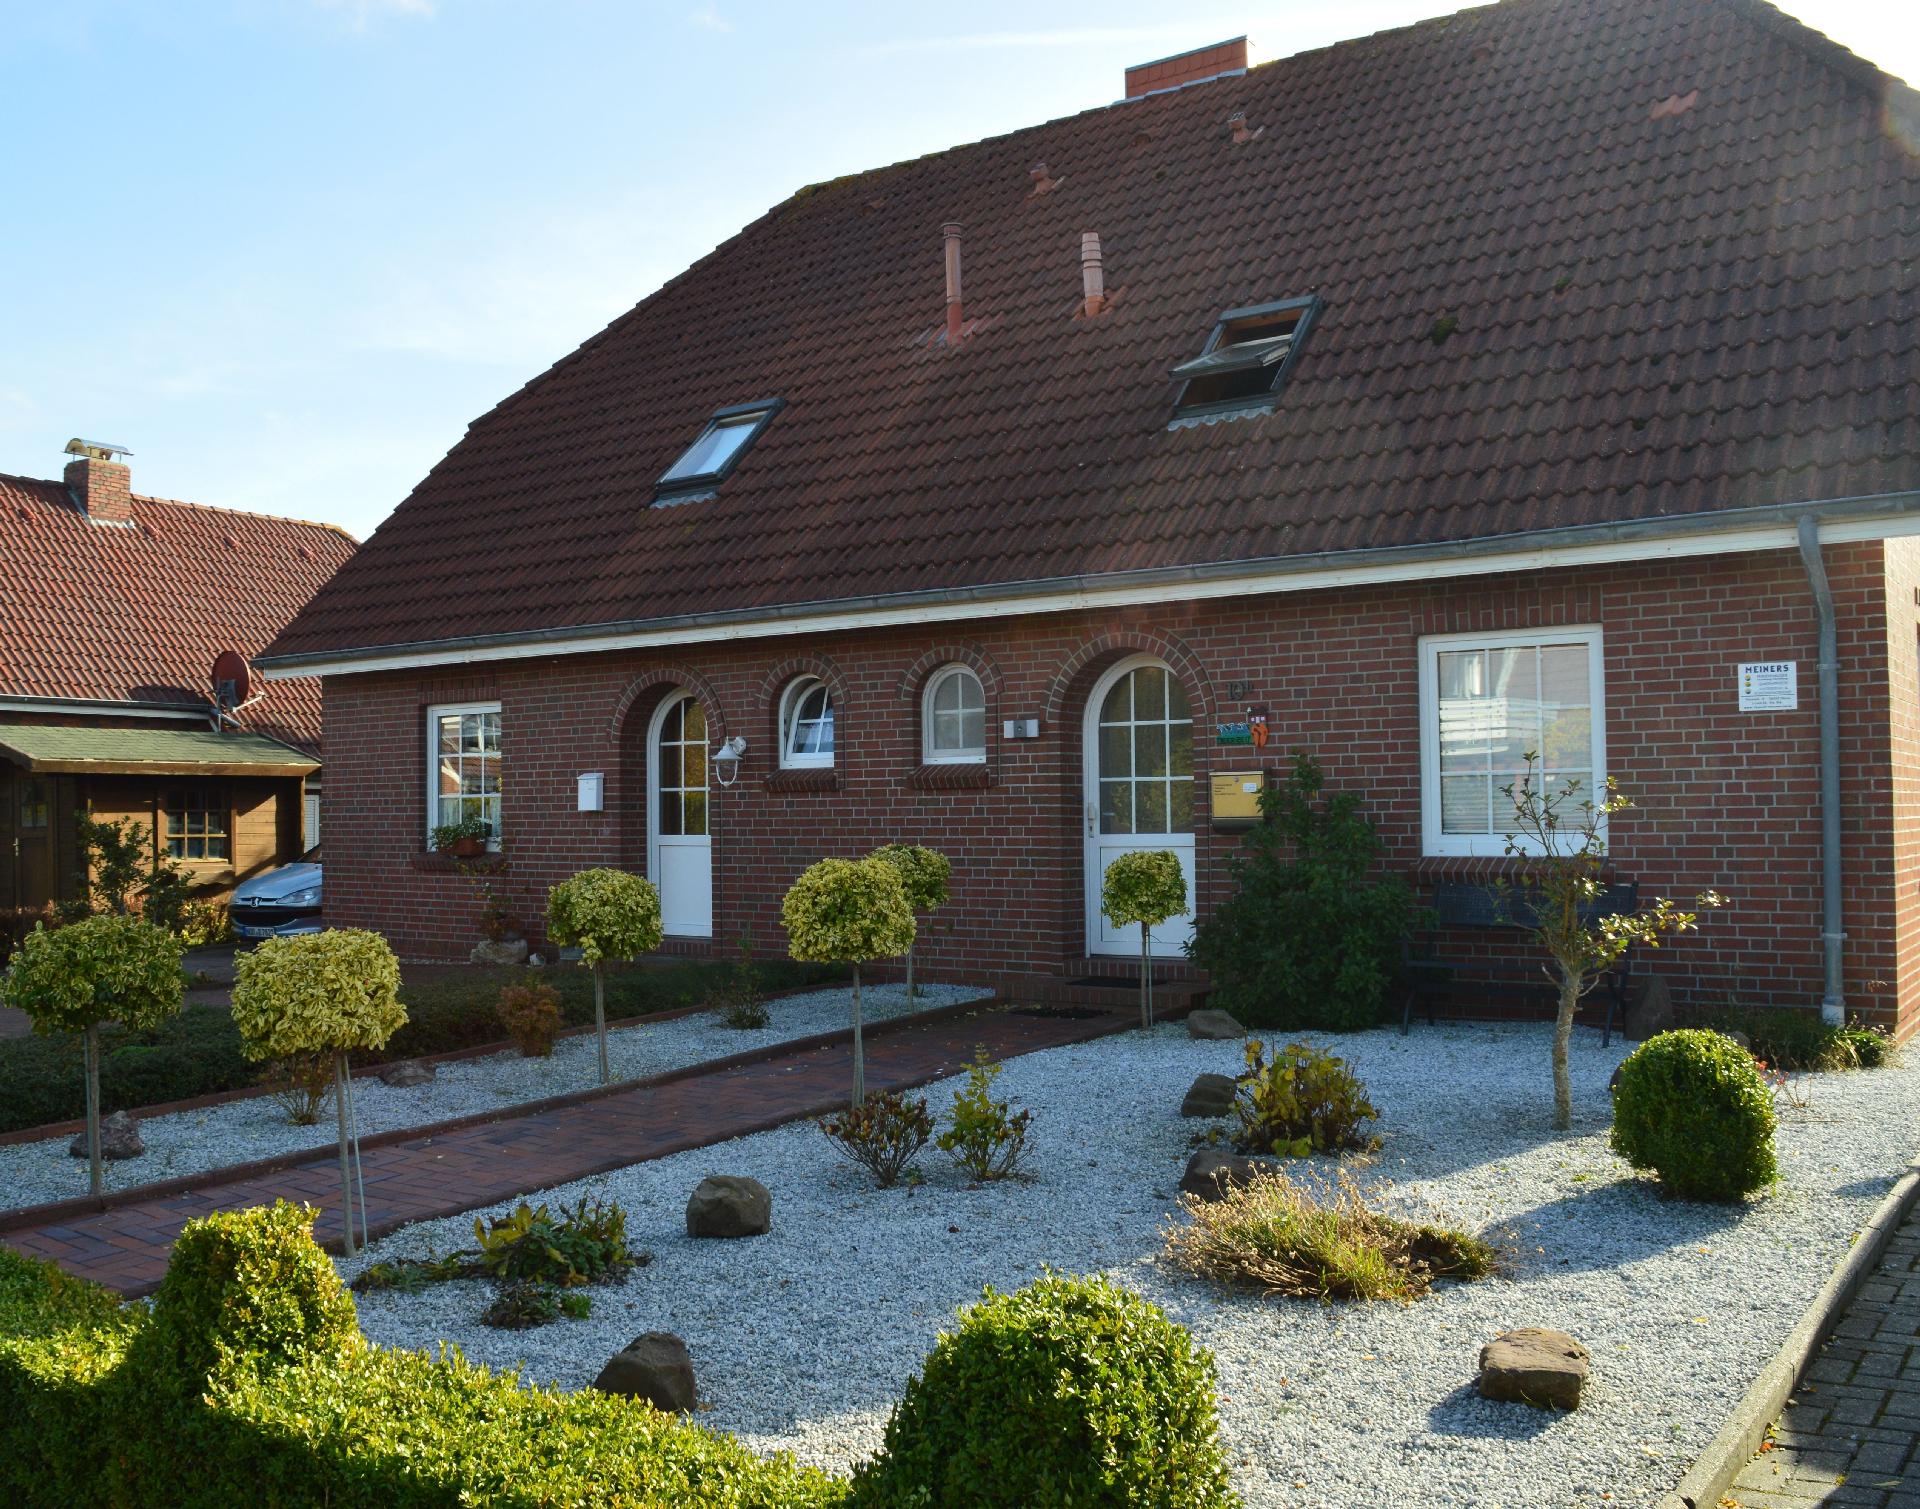  Ferienhaus mit Terrasse, Garten und Fahrradnutzun Ferienhaus in Deutschland